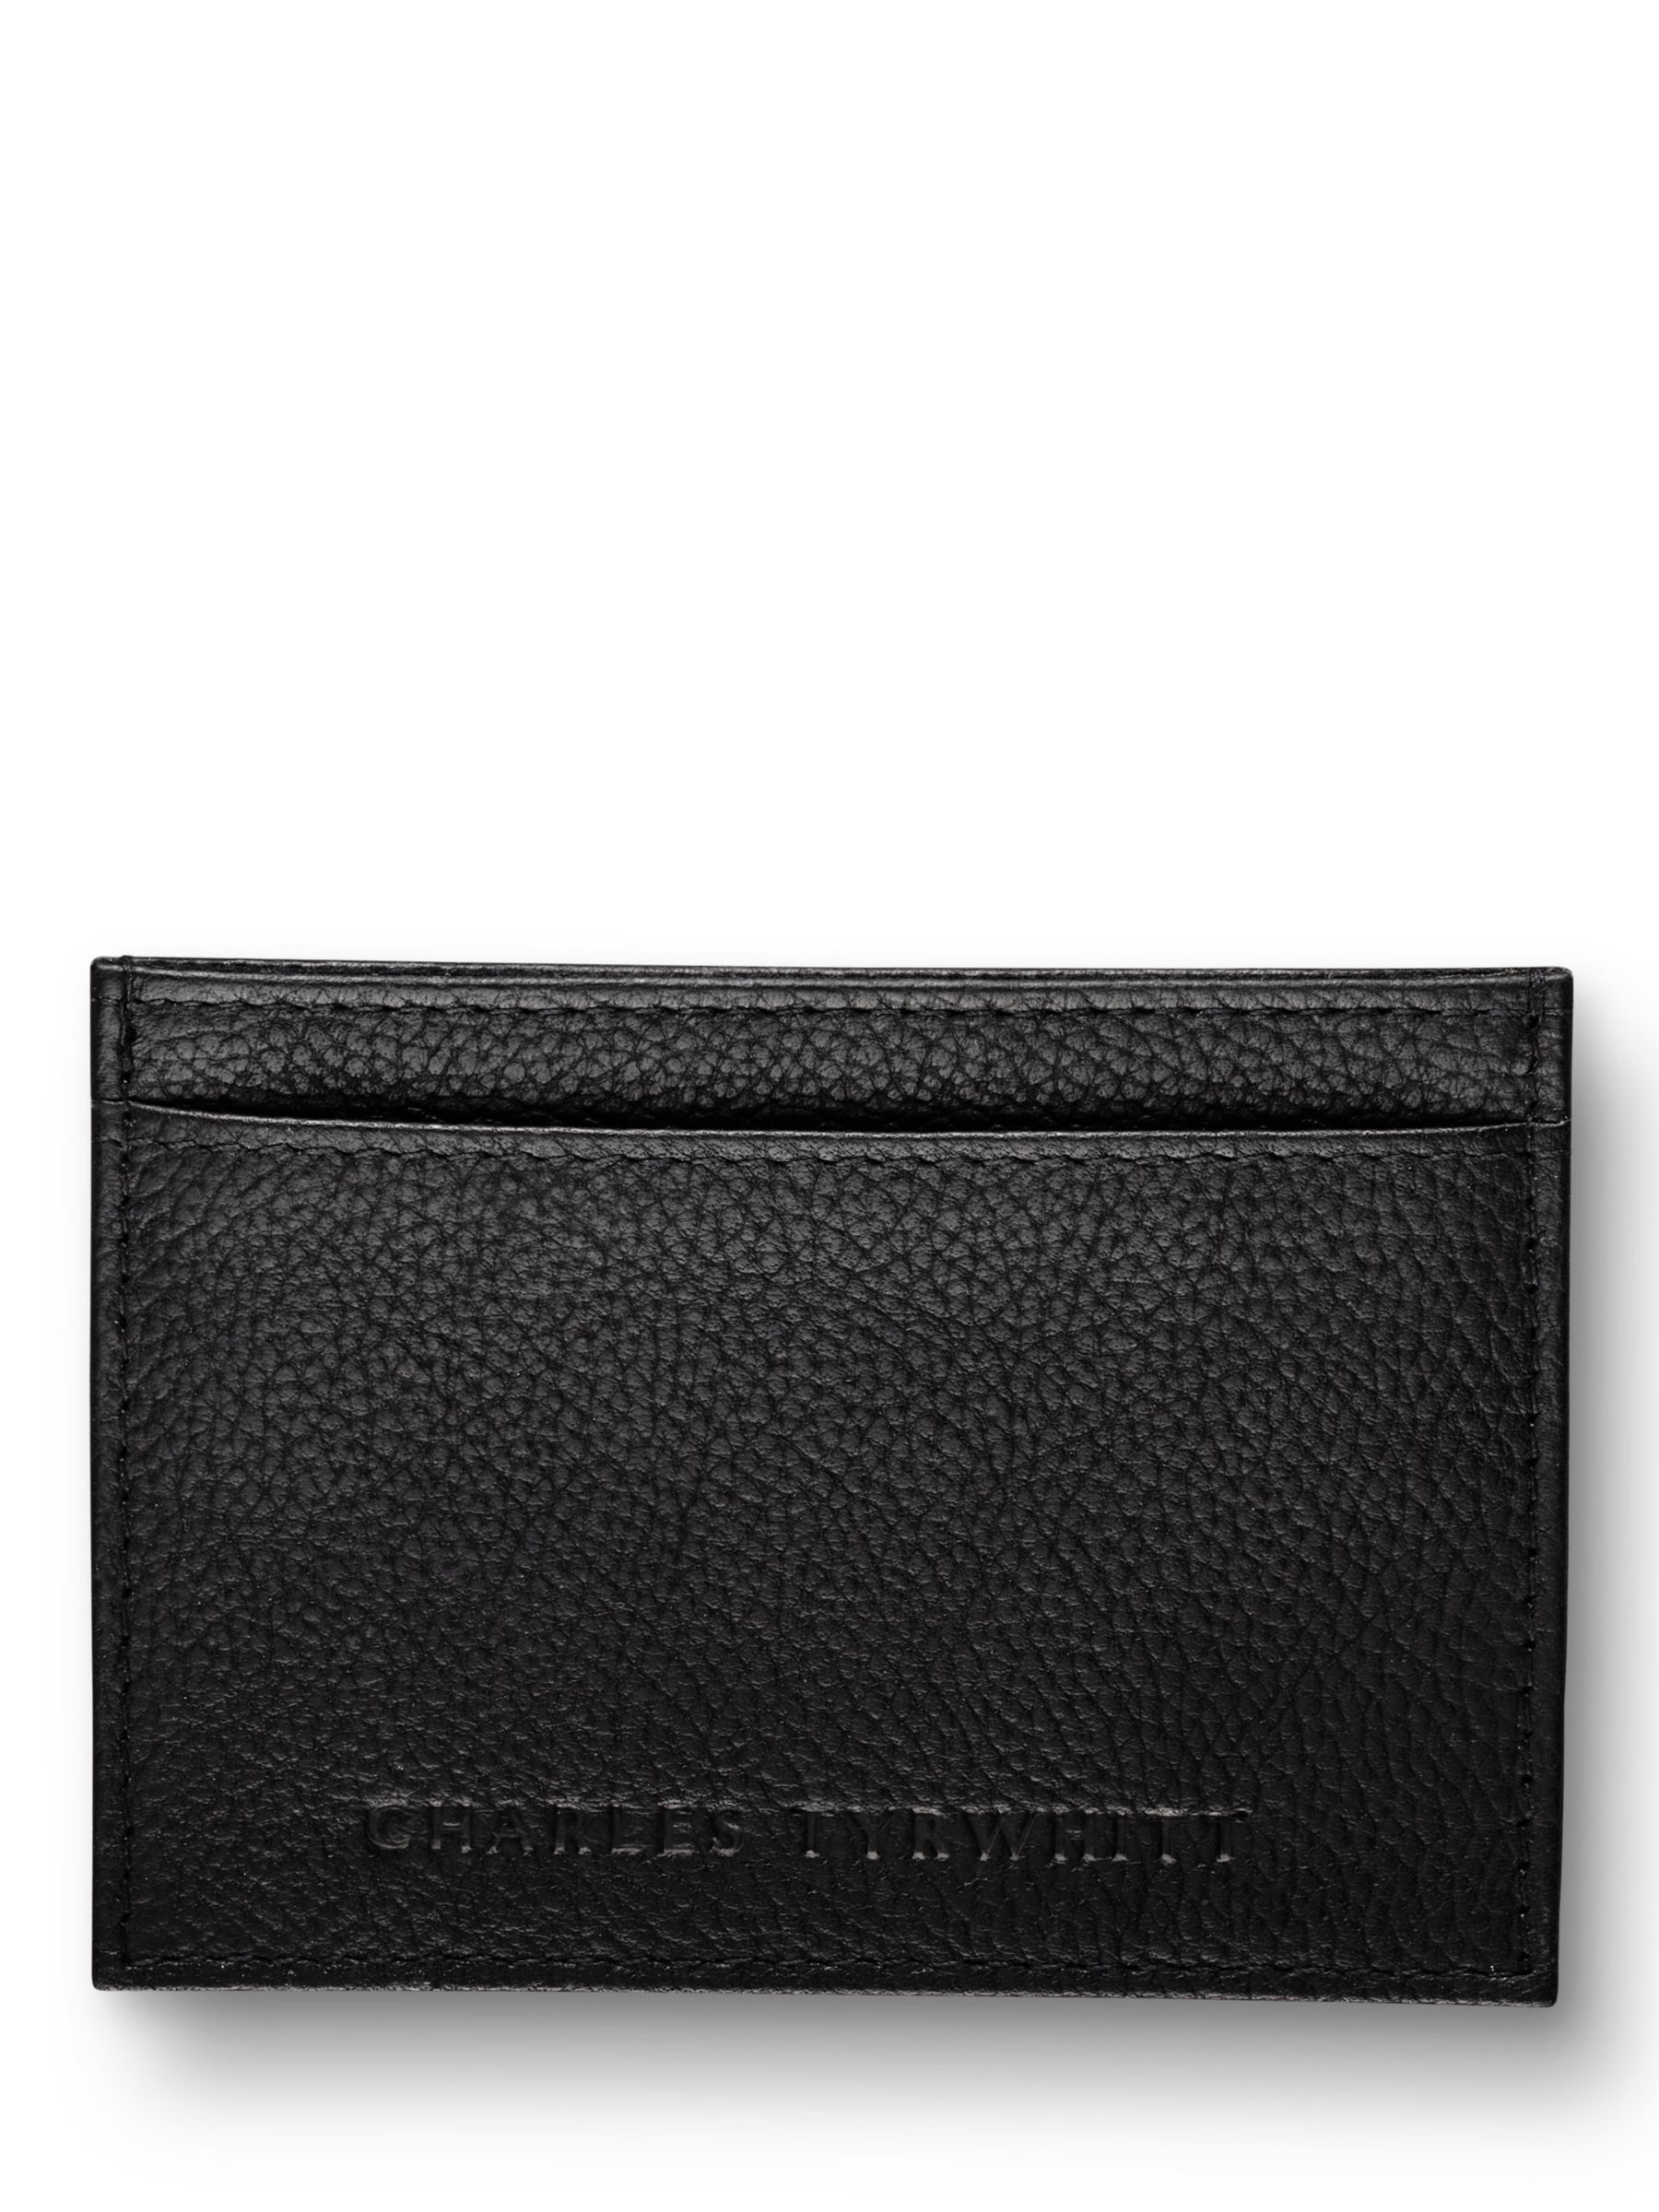 Charles Tyrwhitt Leather Cardholder, Black